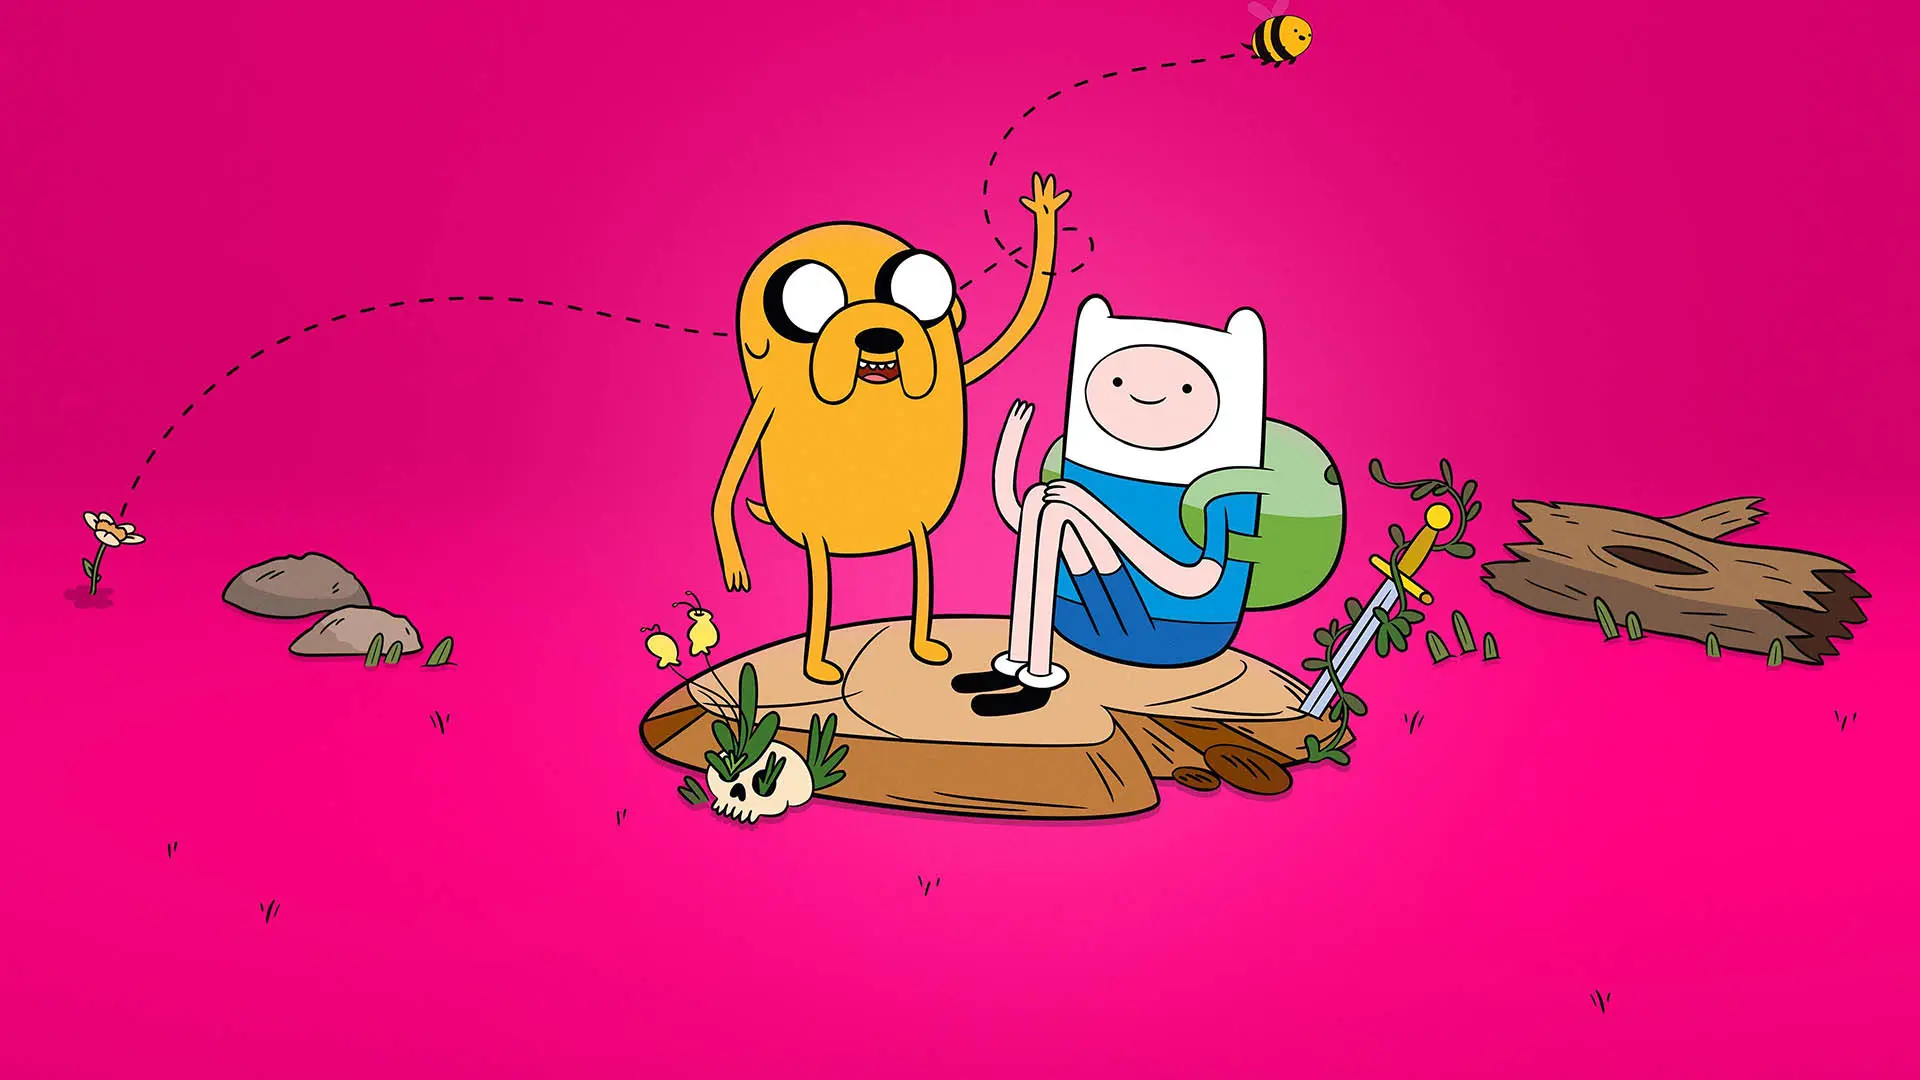 فین مرتنز در انیمیشن Adventure Time